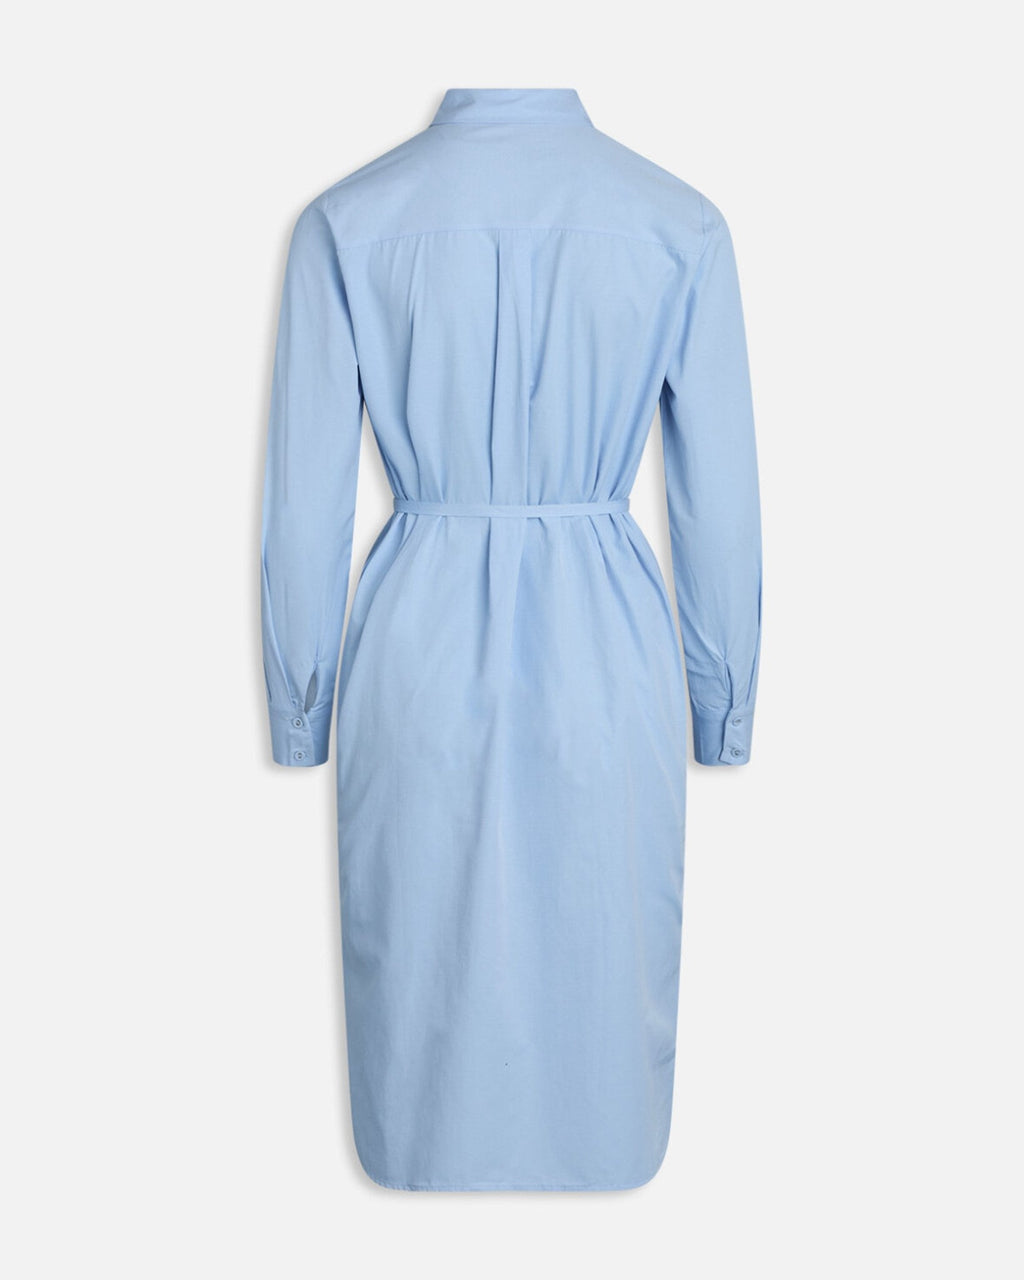 Morika Long Shirt Dress - Μεσαίο μπλε